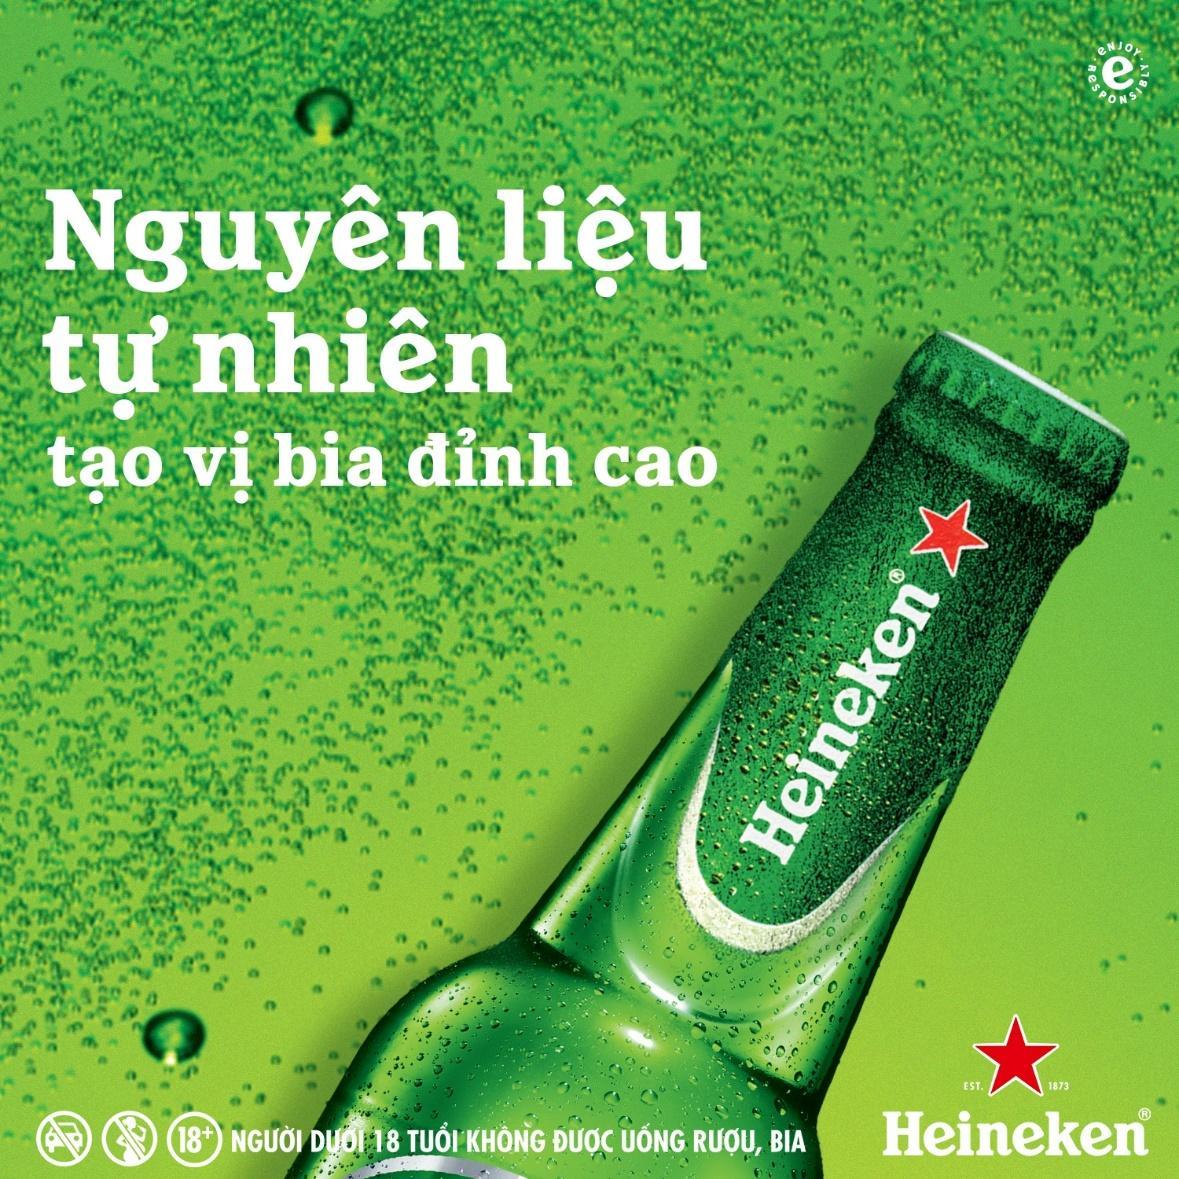 Heineken đồng hành với Gen Z cùng chuyển mình “Xanh hơn mỗi ngày” - Ảnh 2.